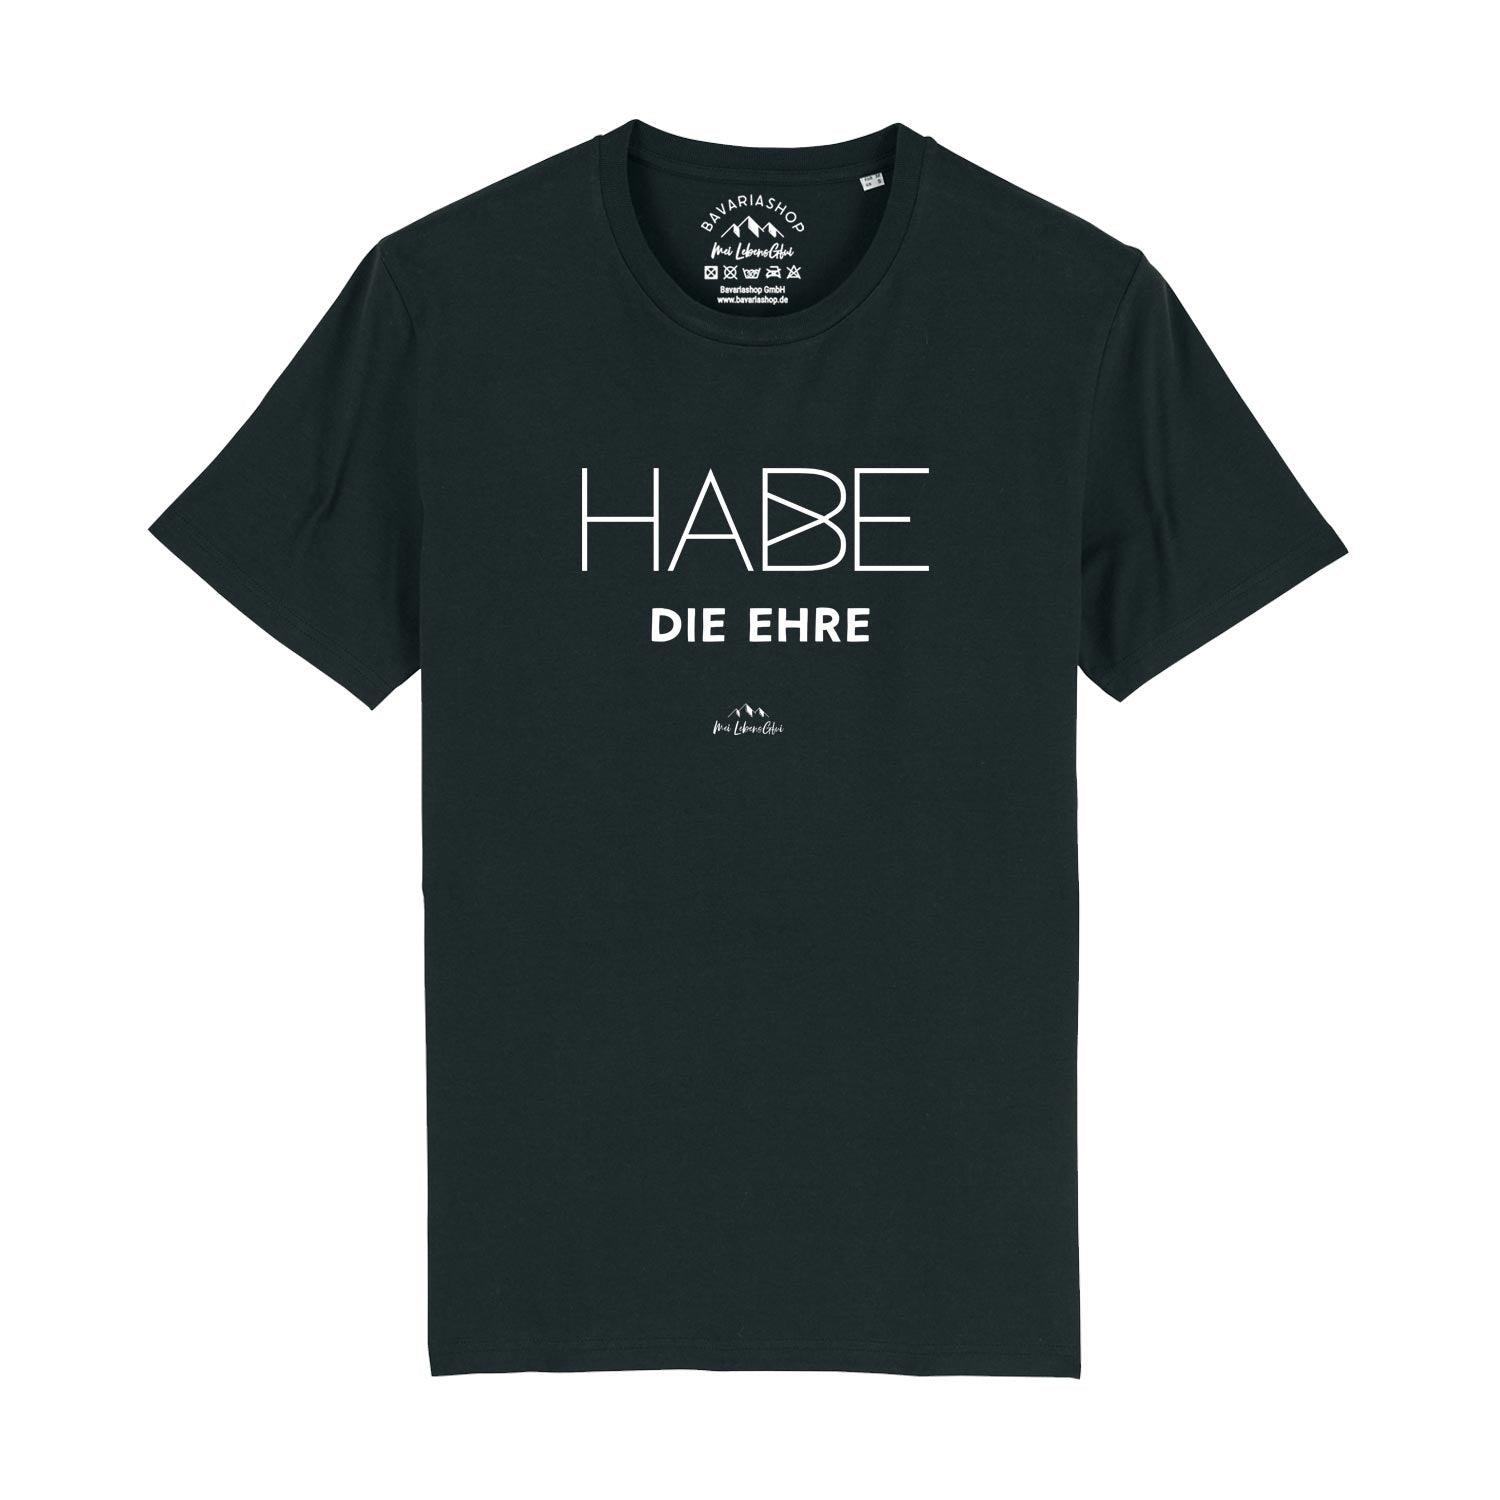 Herren T-Shirt "Habe die Ehre" - bavariashop - mei LebensGfui